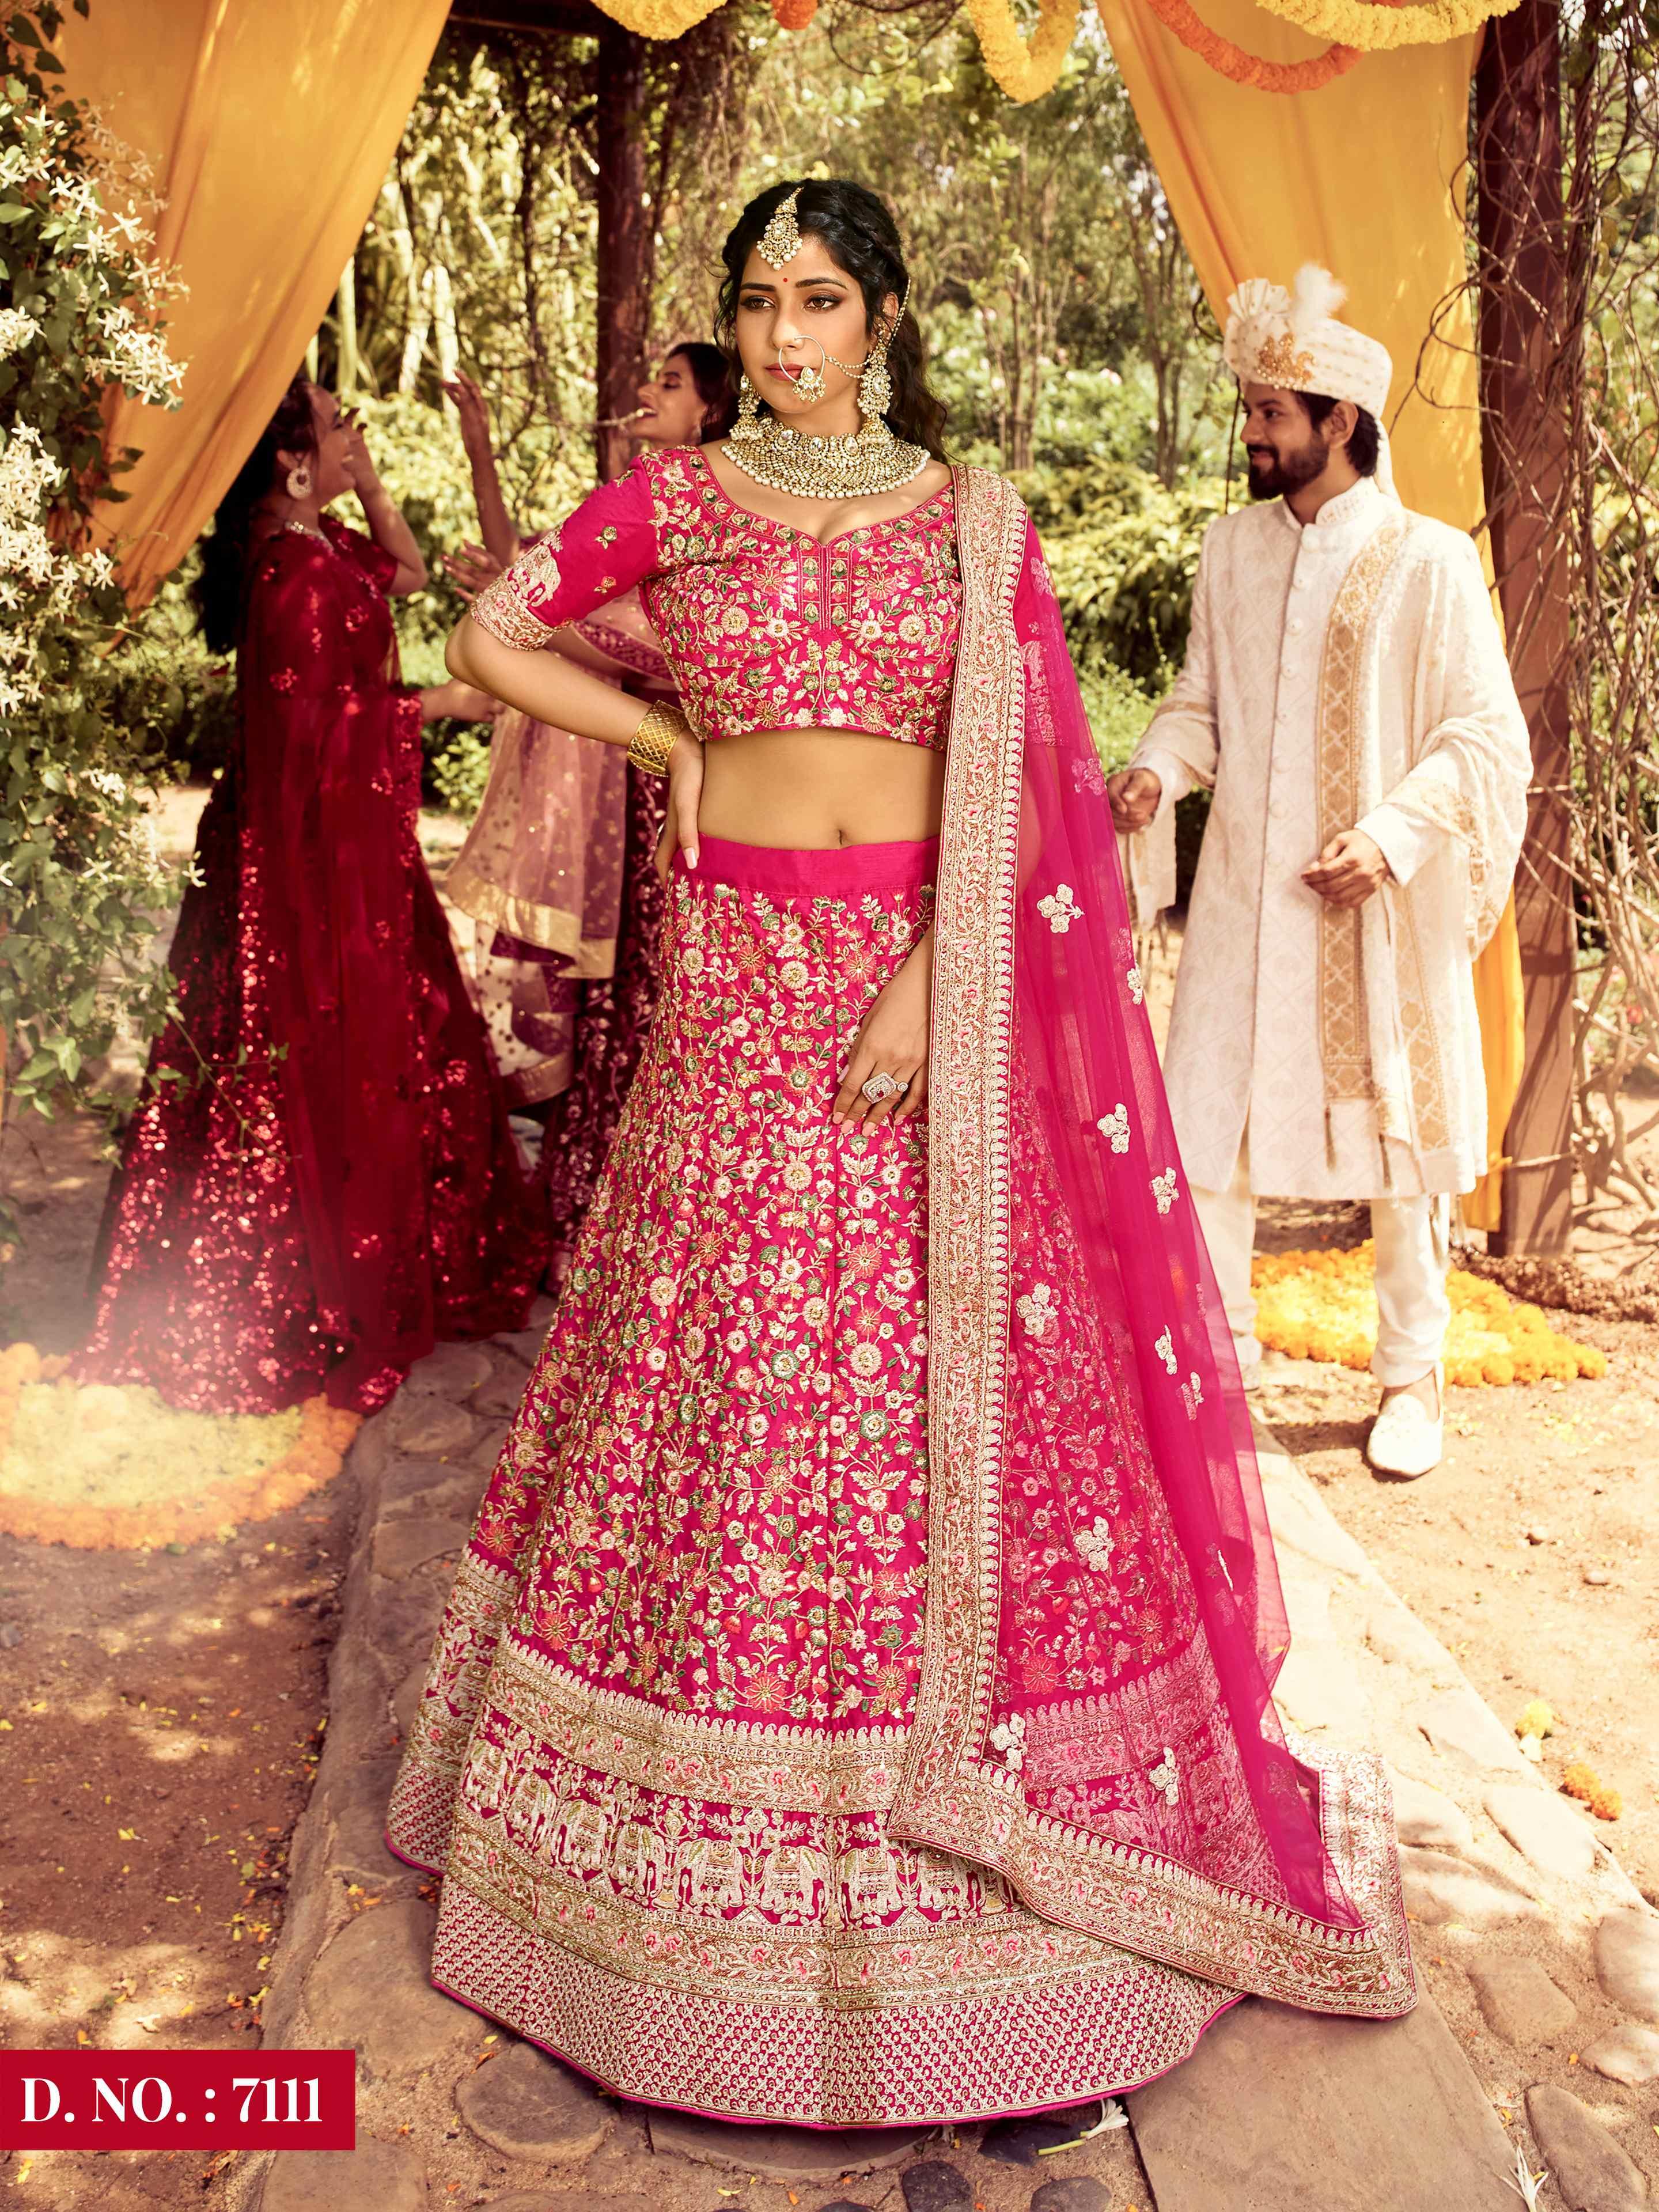 20 Best Manish Malhotra's Bridal Collection - Lehengas & Dress